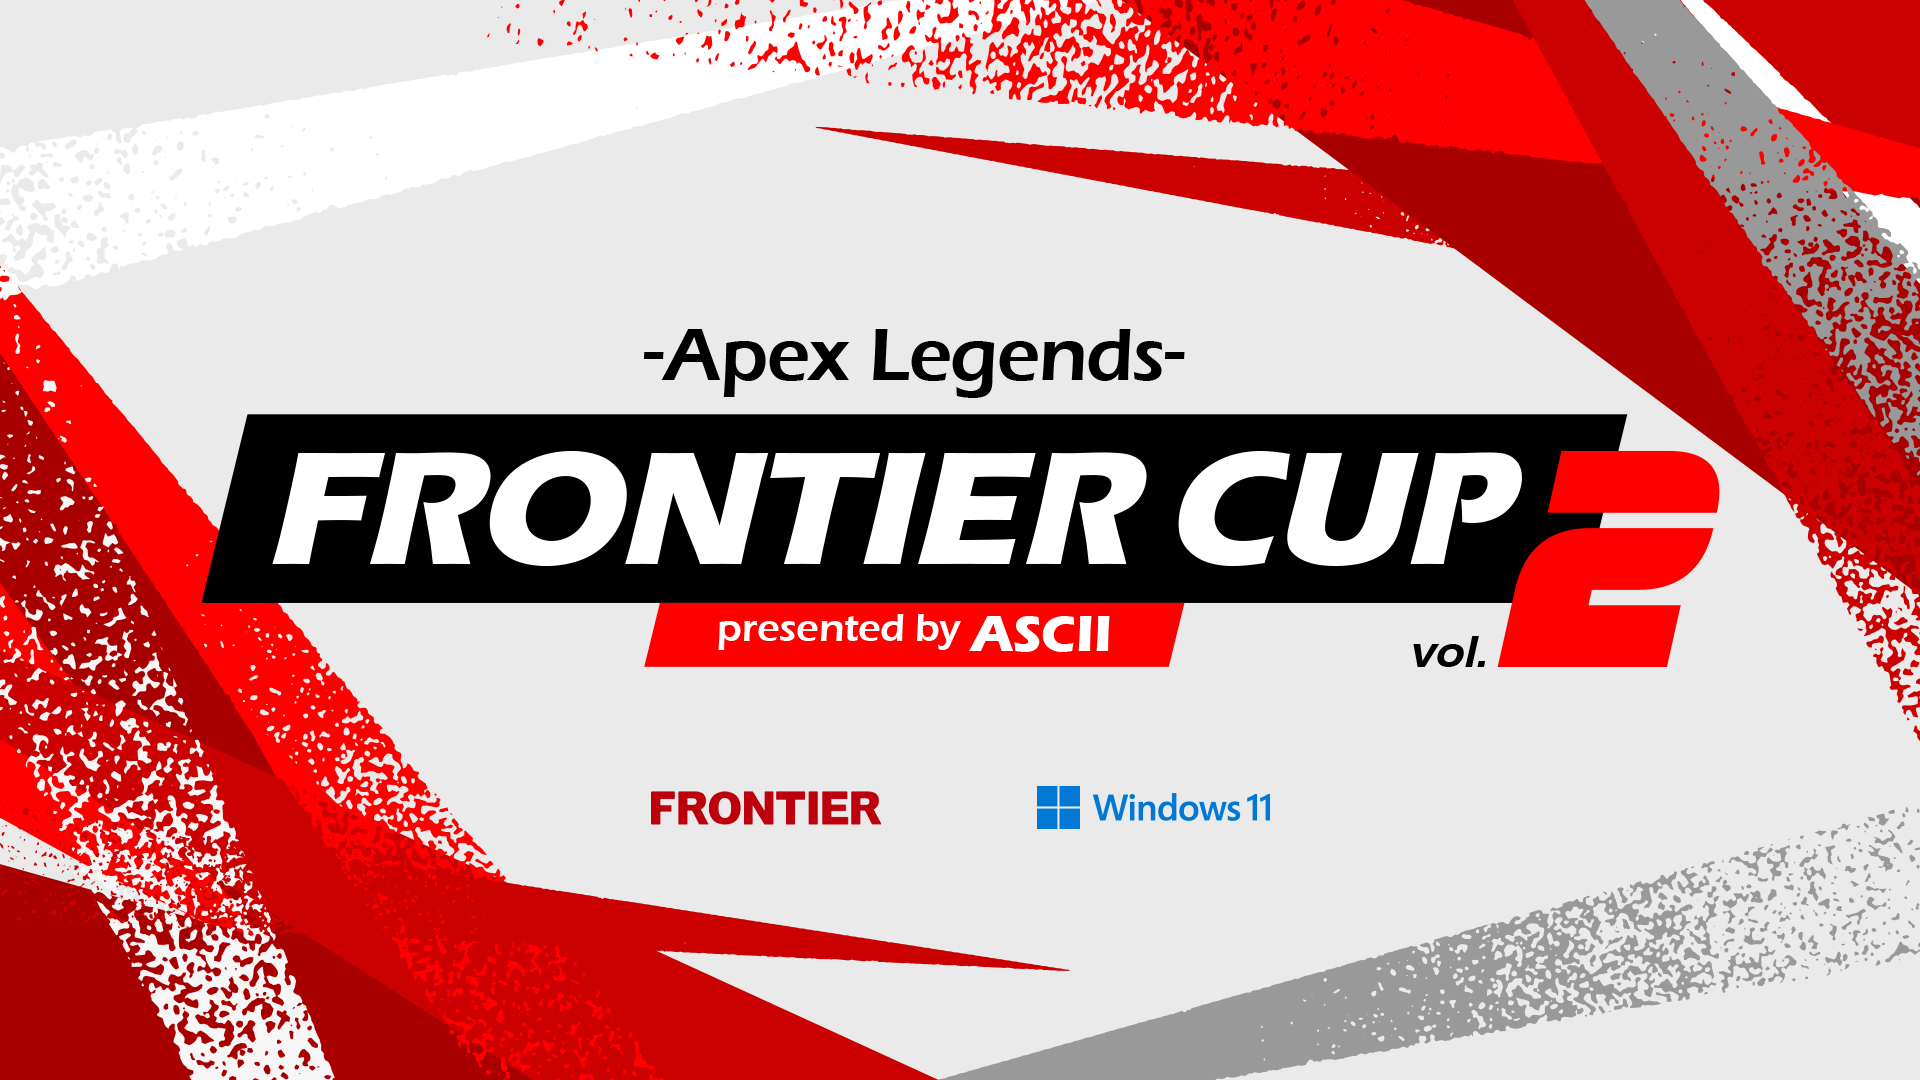 アスキー主催eスポーツ大会の第2回開催決定！『FRONTIER CUP vol.2 -Apex Legends- presented by ASCII』
